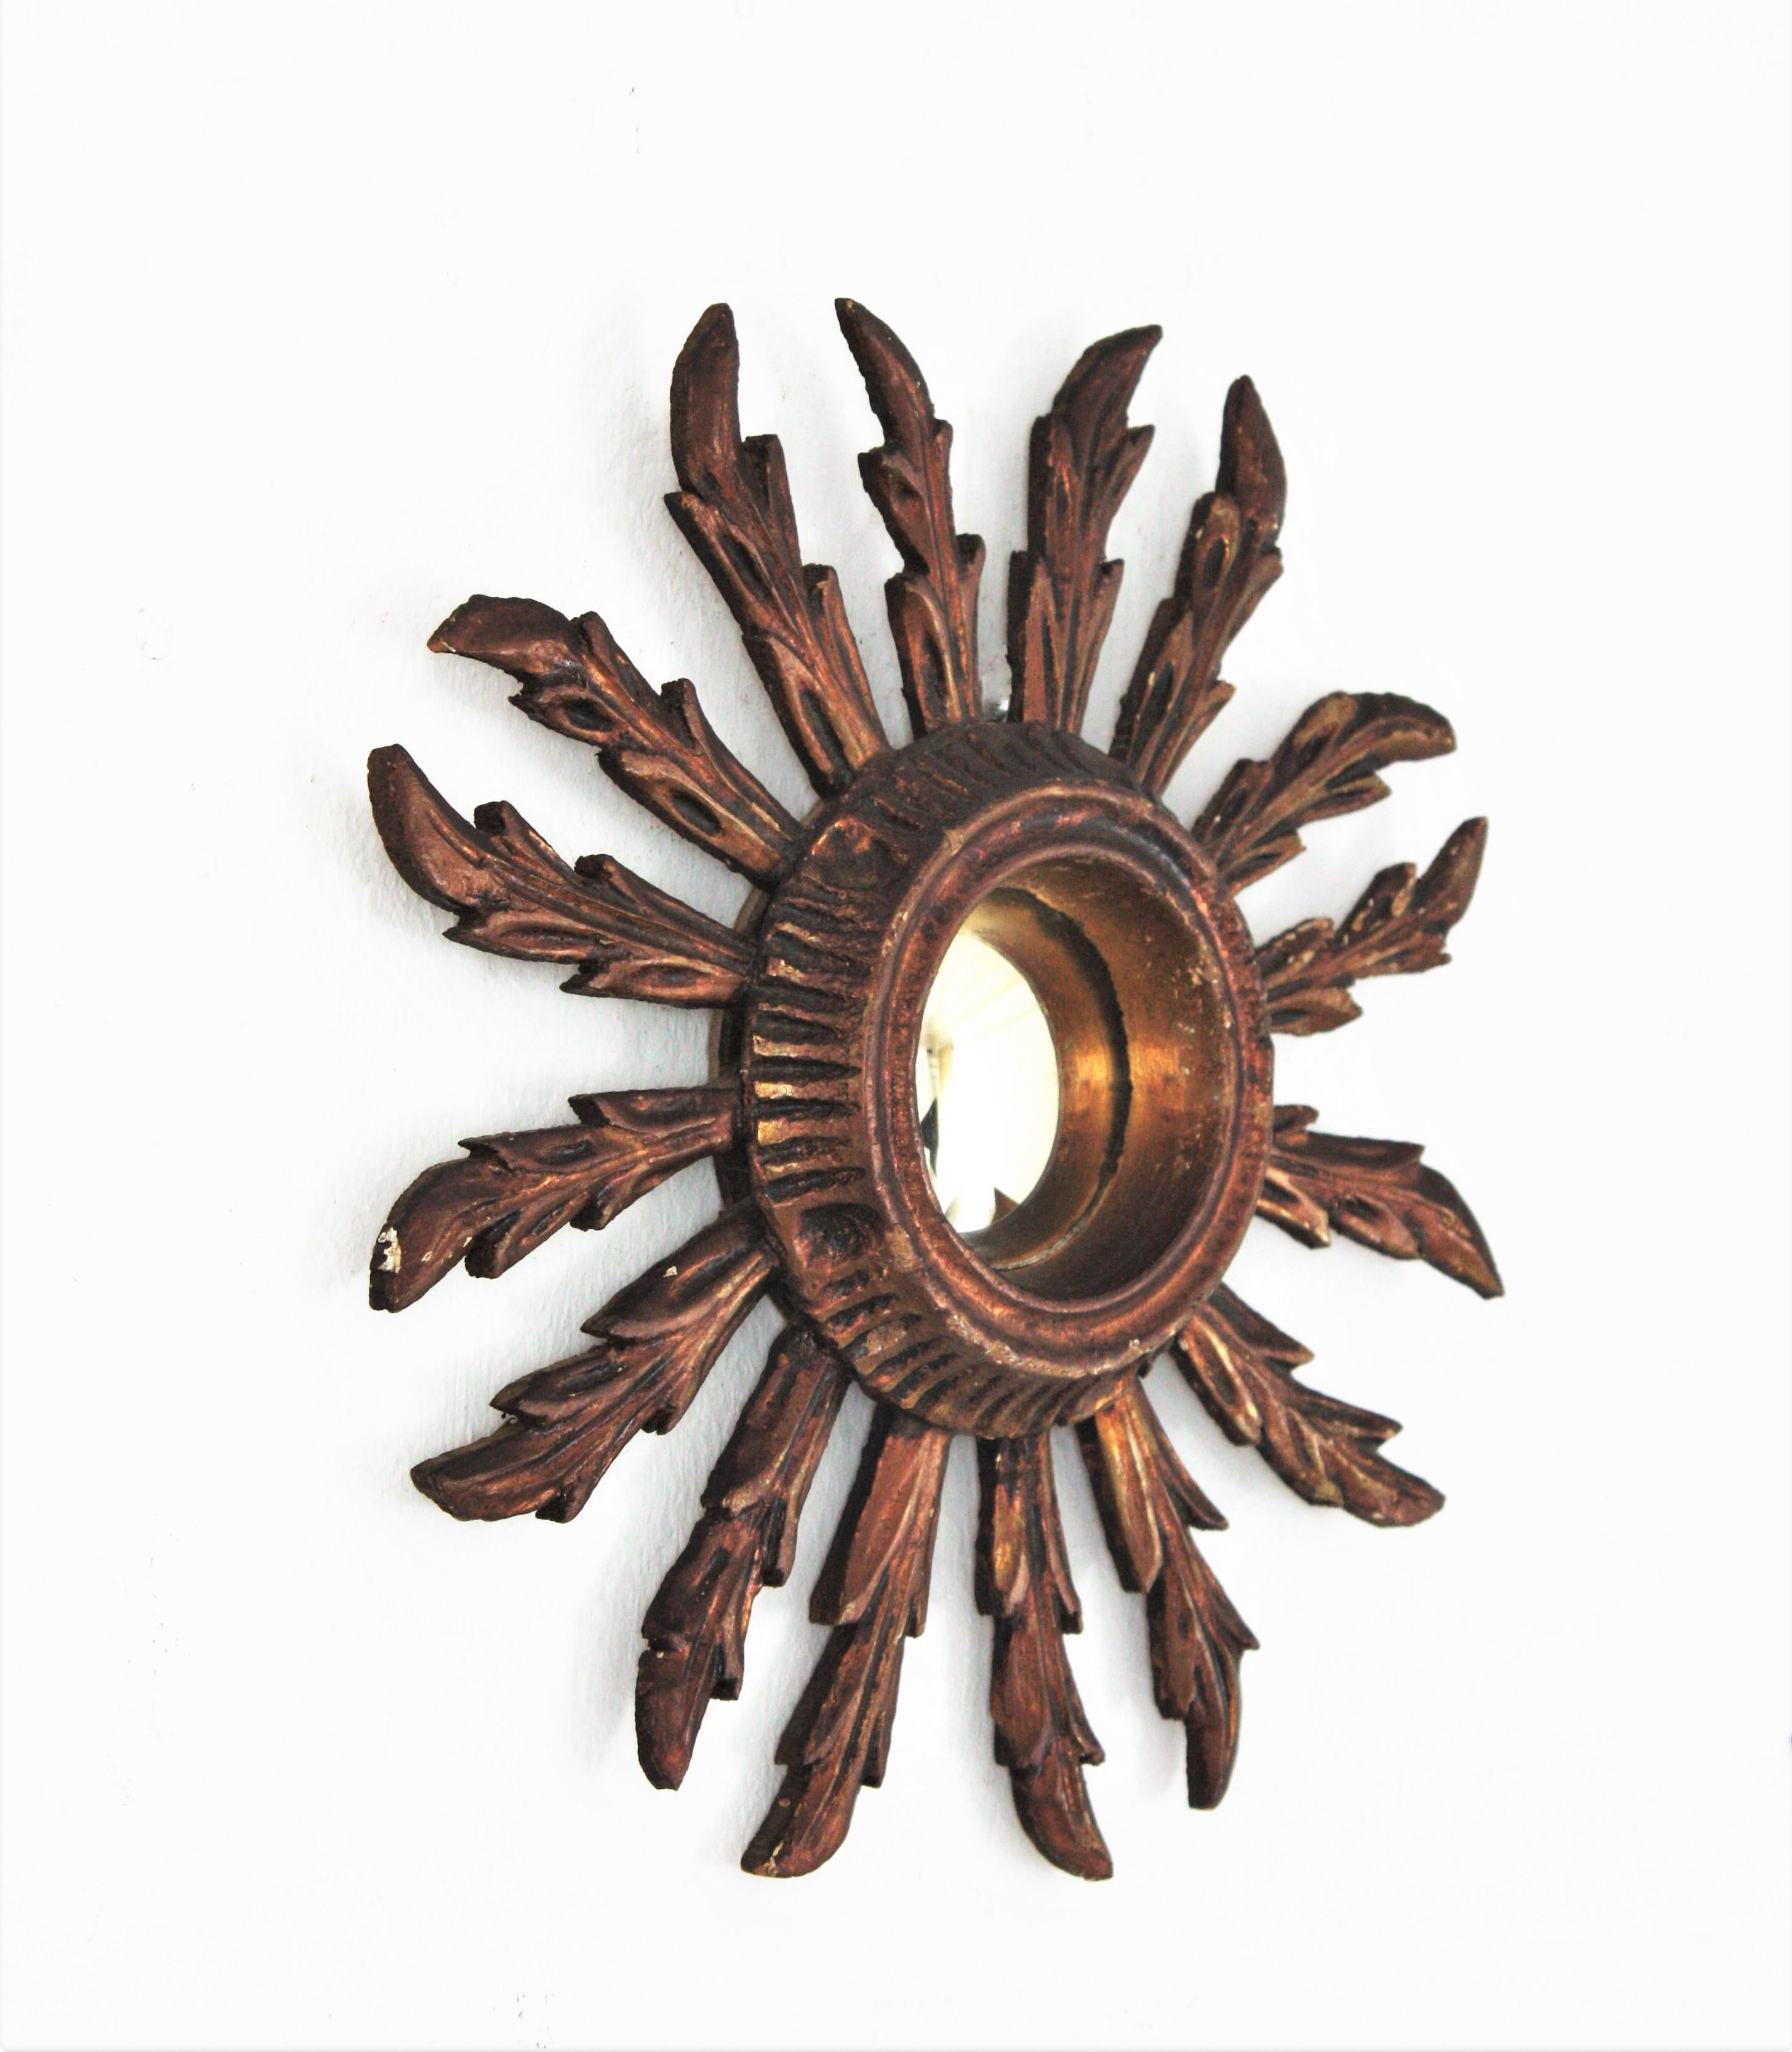 Spanish Sunburst Convex Mirror in Small Scale, Baroque Style For Sale